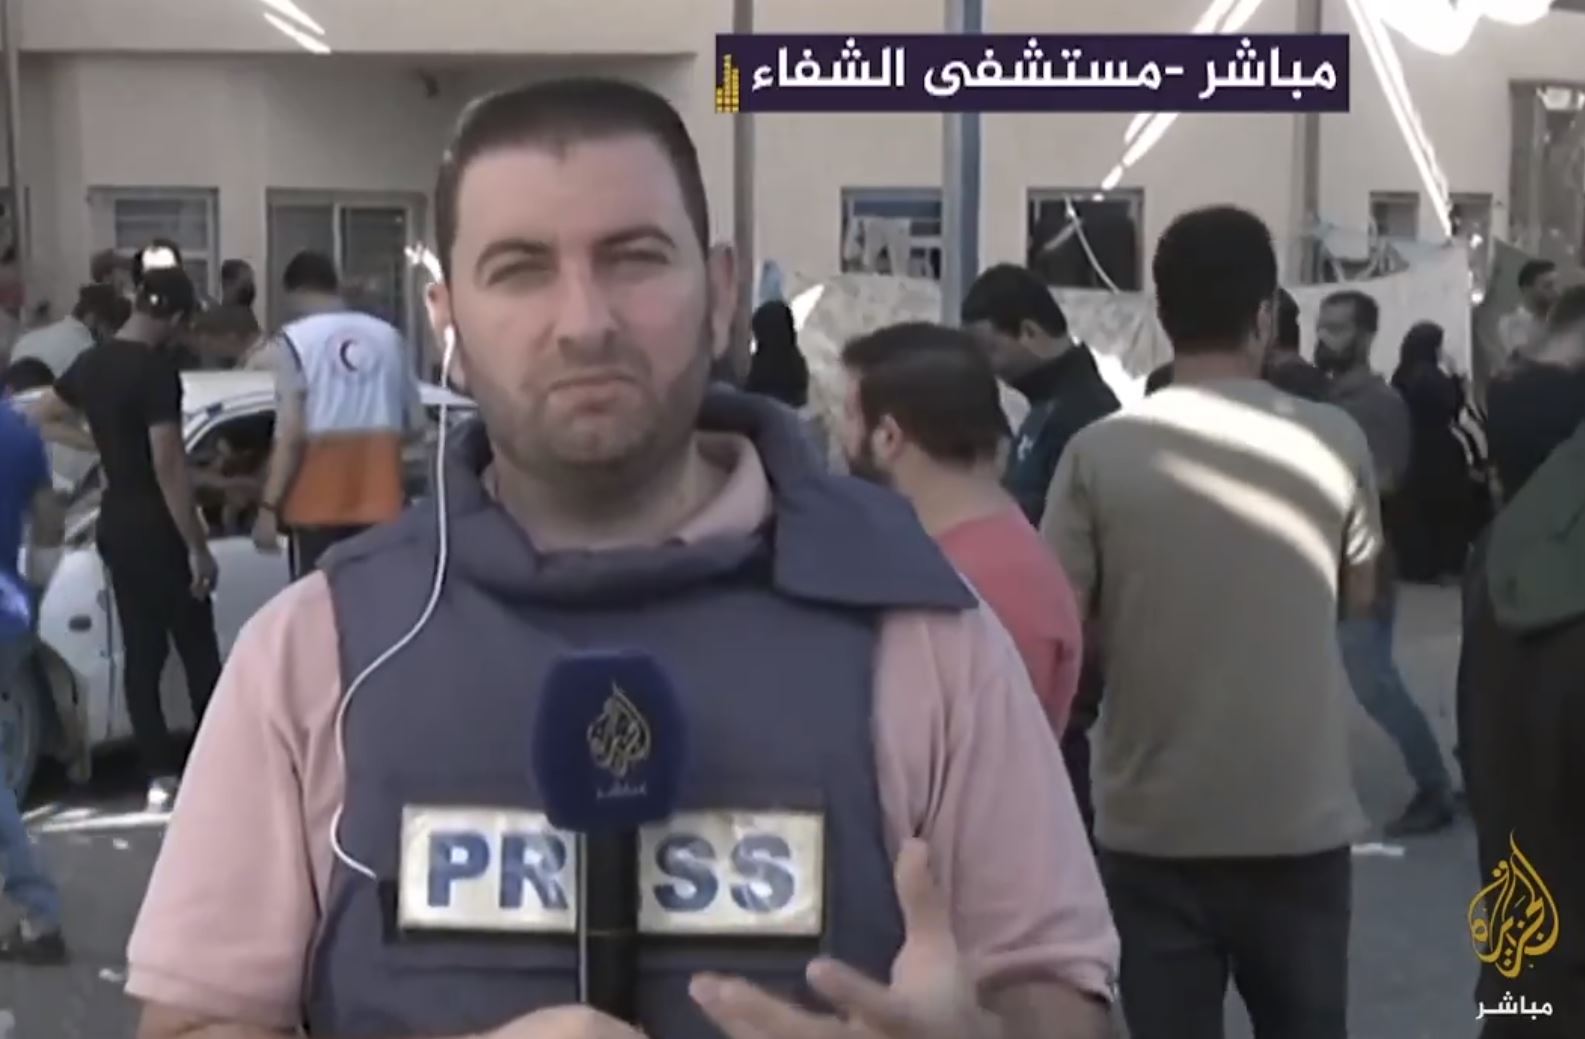 Αποκάλυψη των Ισραηλινών Δυνάμεων: Δημοσιογράφος του Al Jazeera είναι και διοικητής της Χαμάς